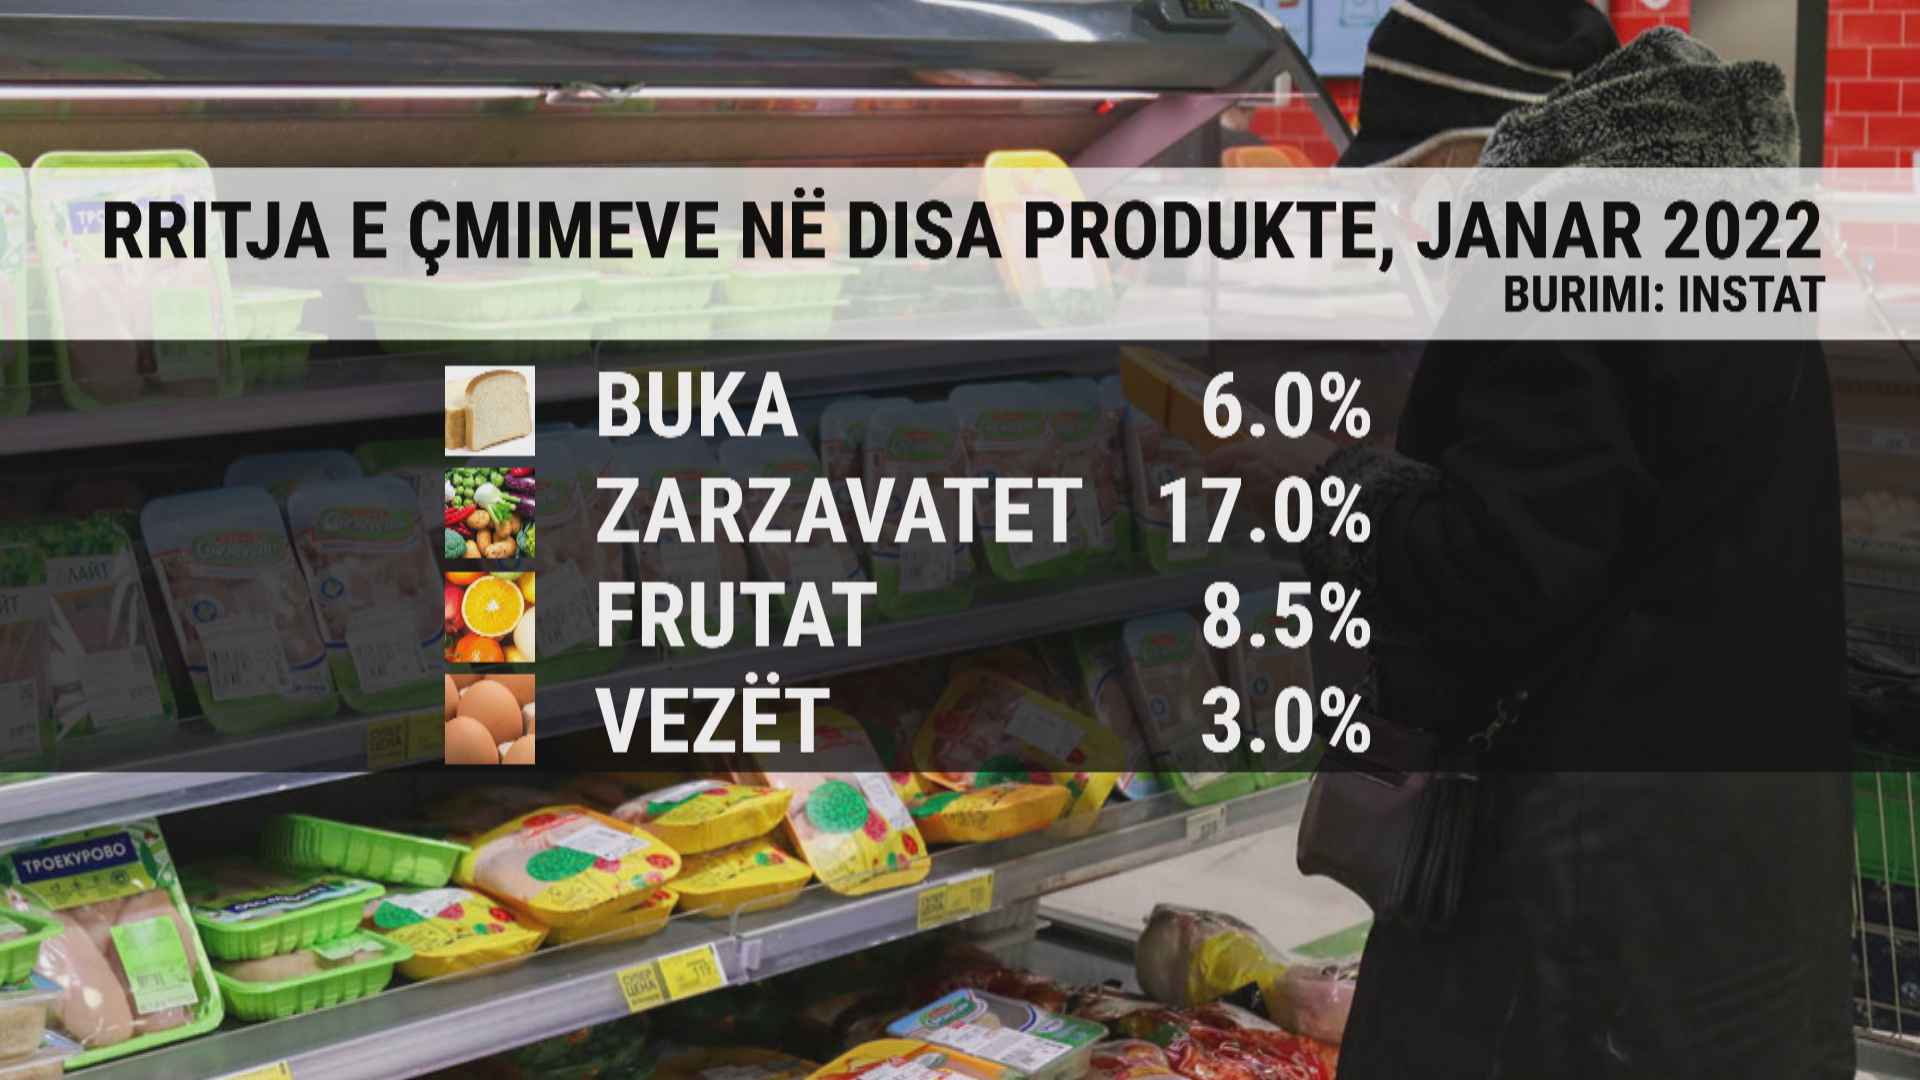 Statistikat/ Rritja e çmimeve! Kryesojnë zarzavatet, frutat, buka dhe mishi